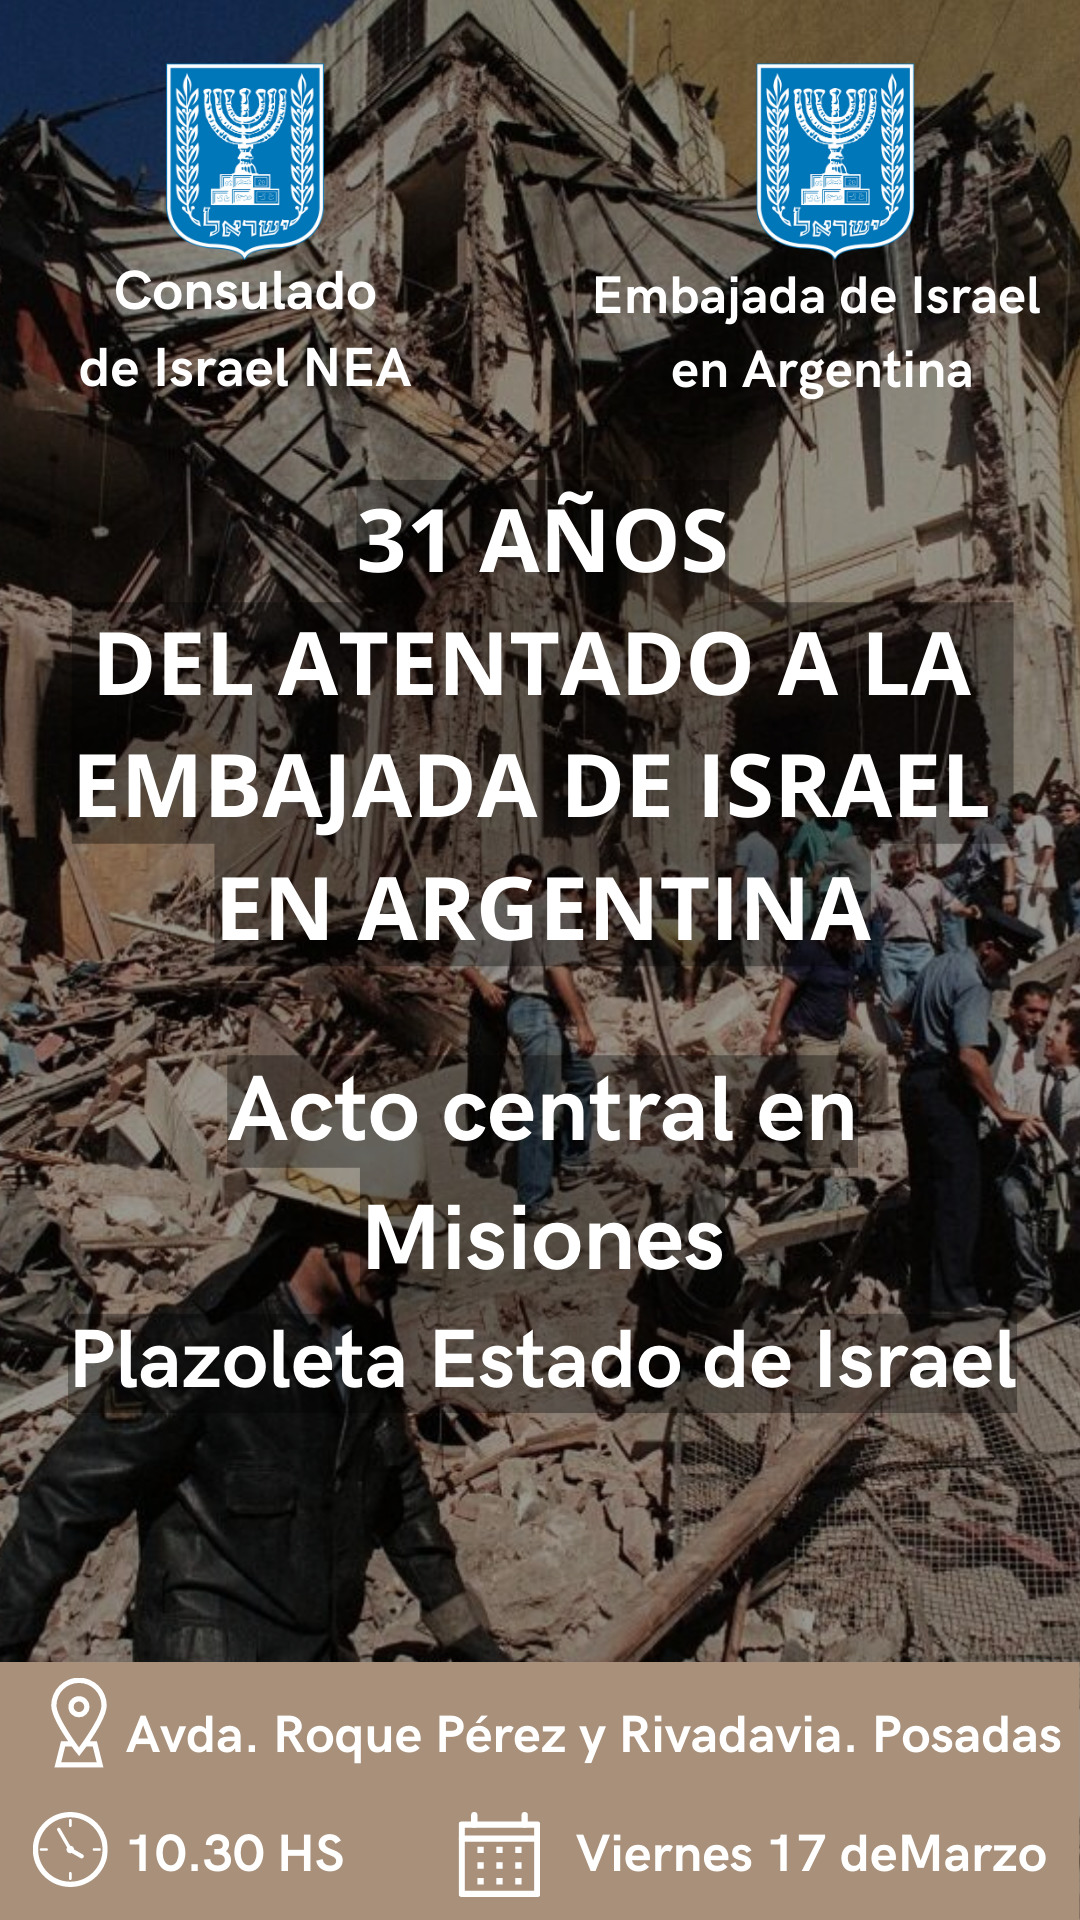 El viernes 17 harán en Posadas un homenaje a las víctimas del atentado a la Embajada de Israel imagen-2